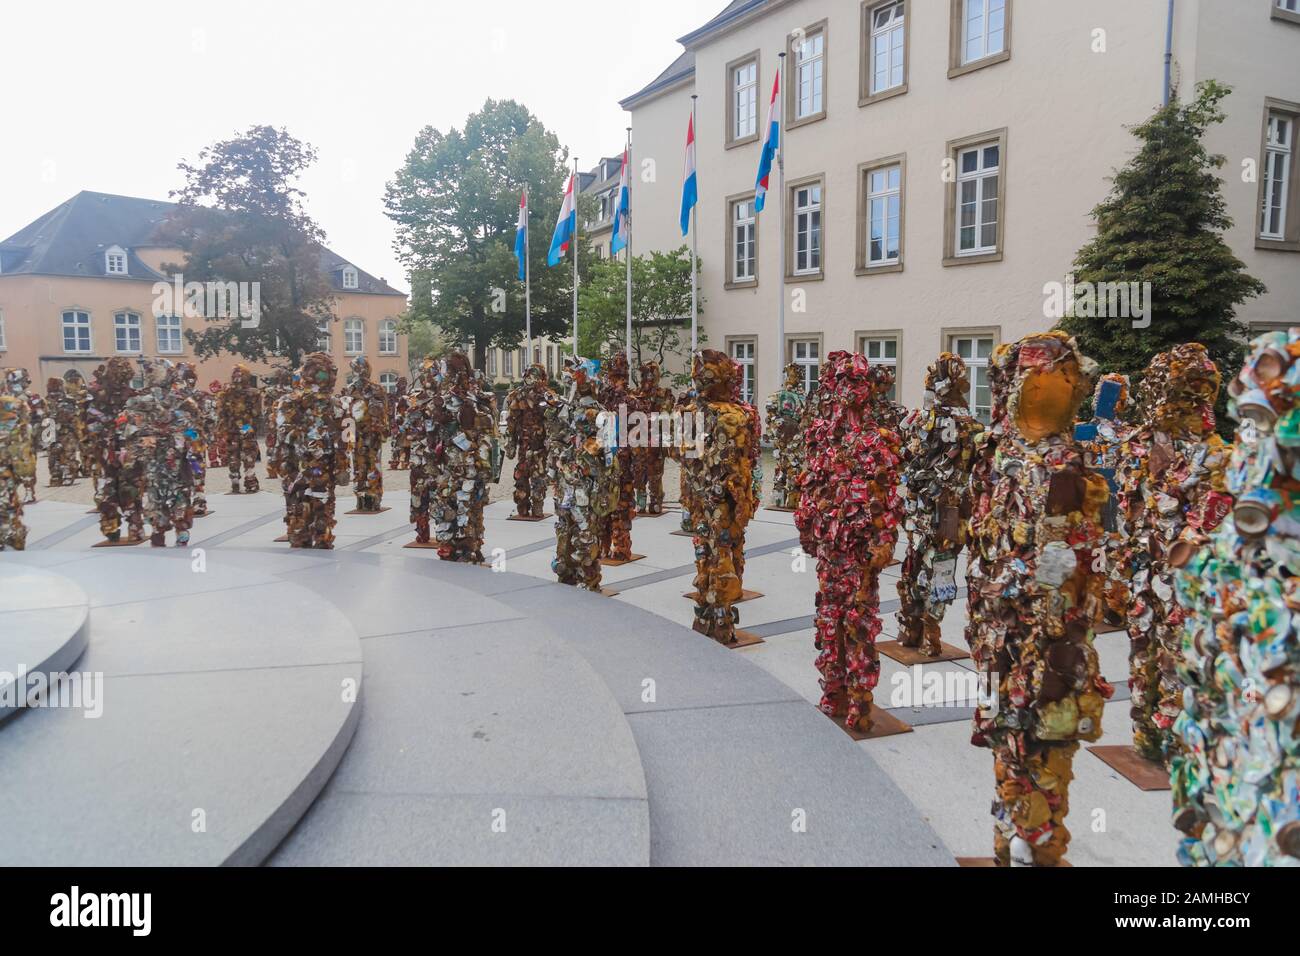 Lussemburgo, Lussemburgo - 12 settembre 2014: Cestino esercito di persone fatte di cestino rifiuti dall'artista tedesco Schult Foto Stock